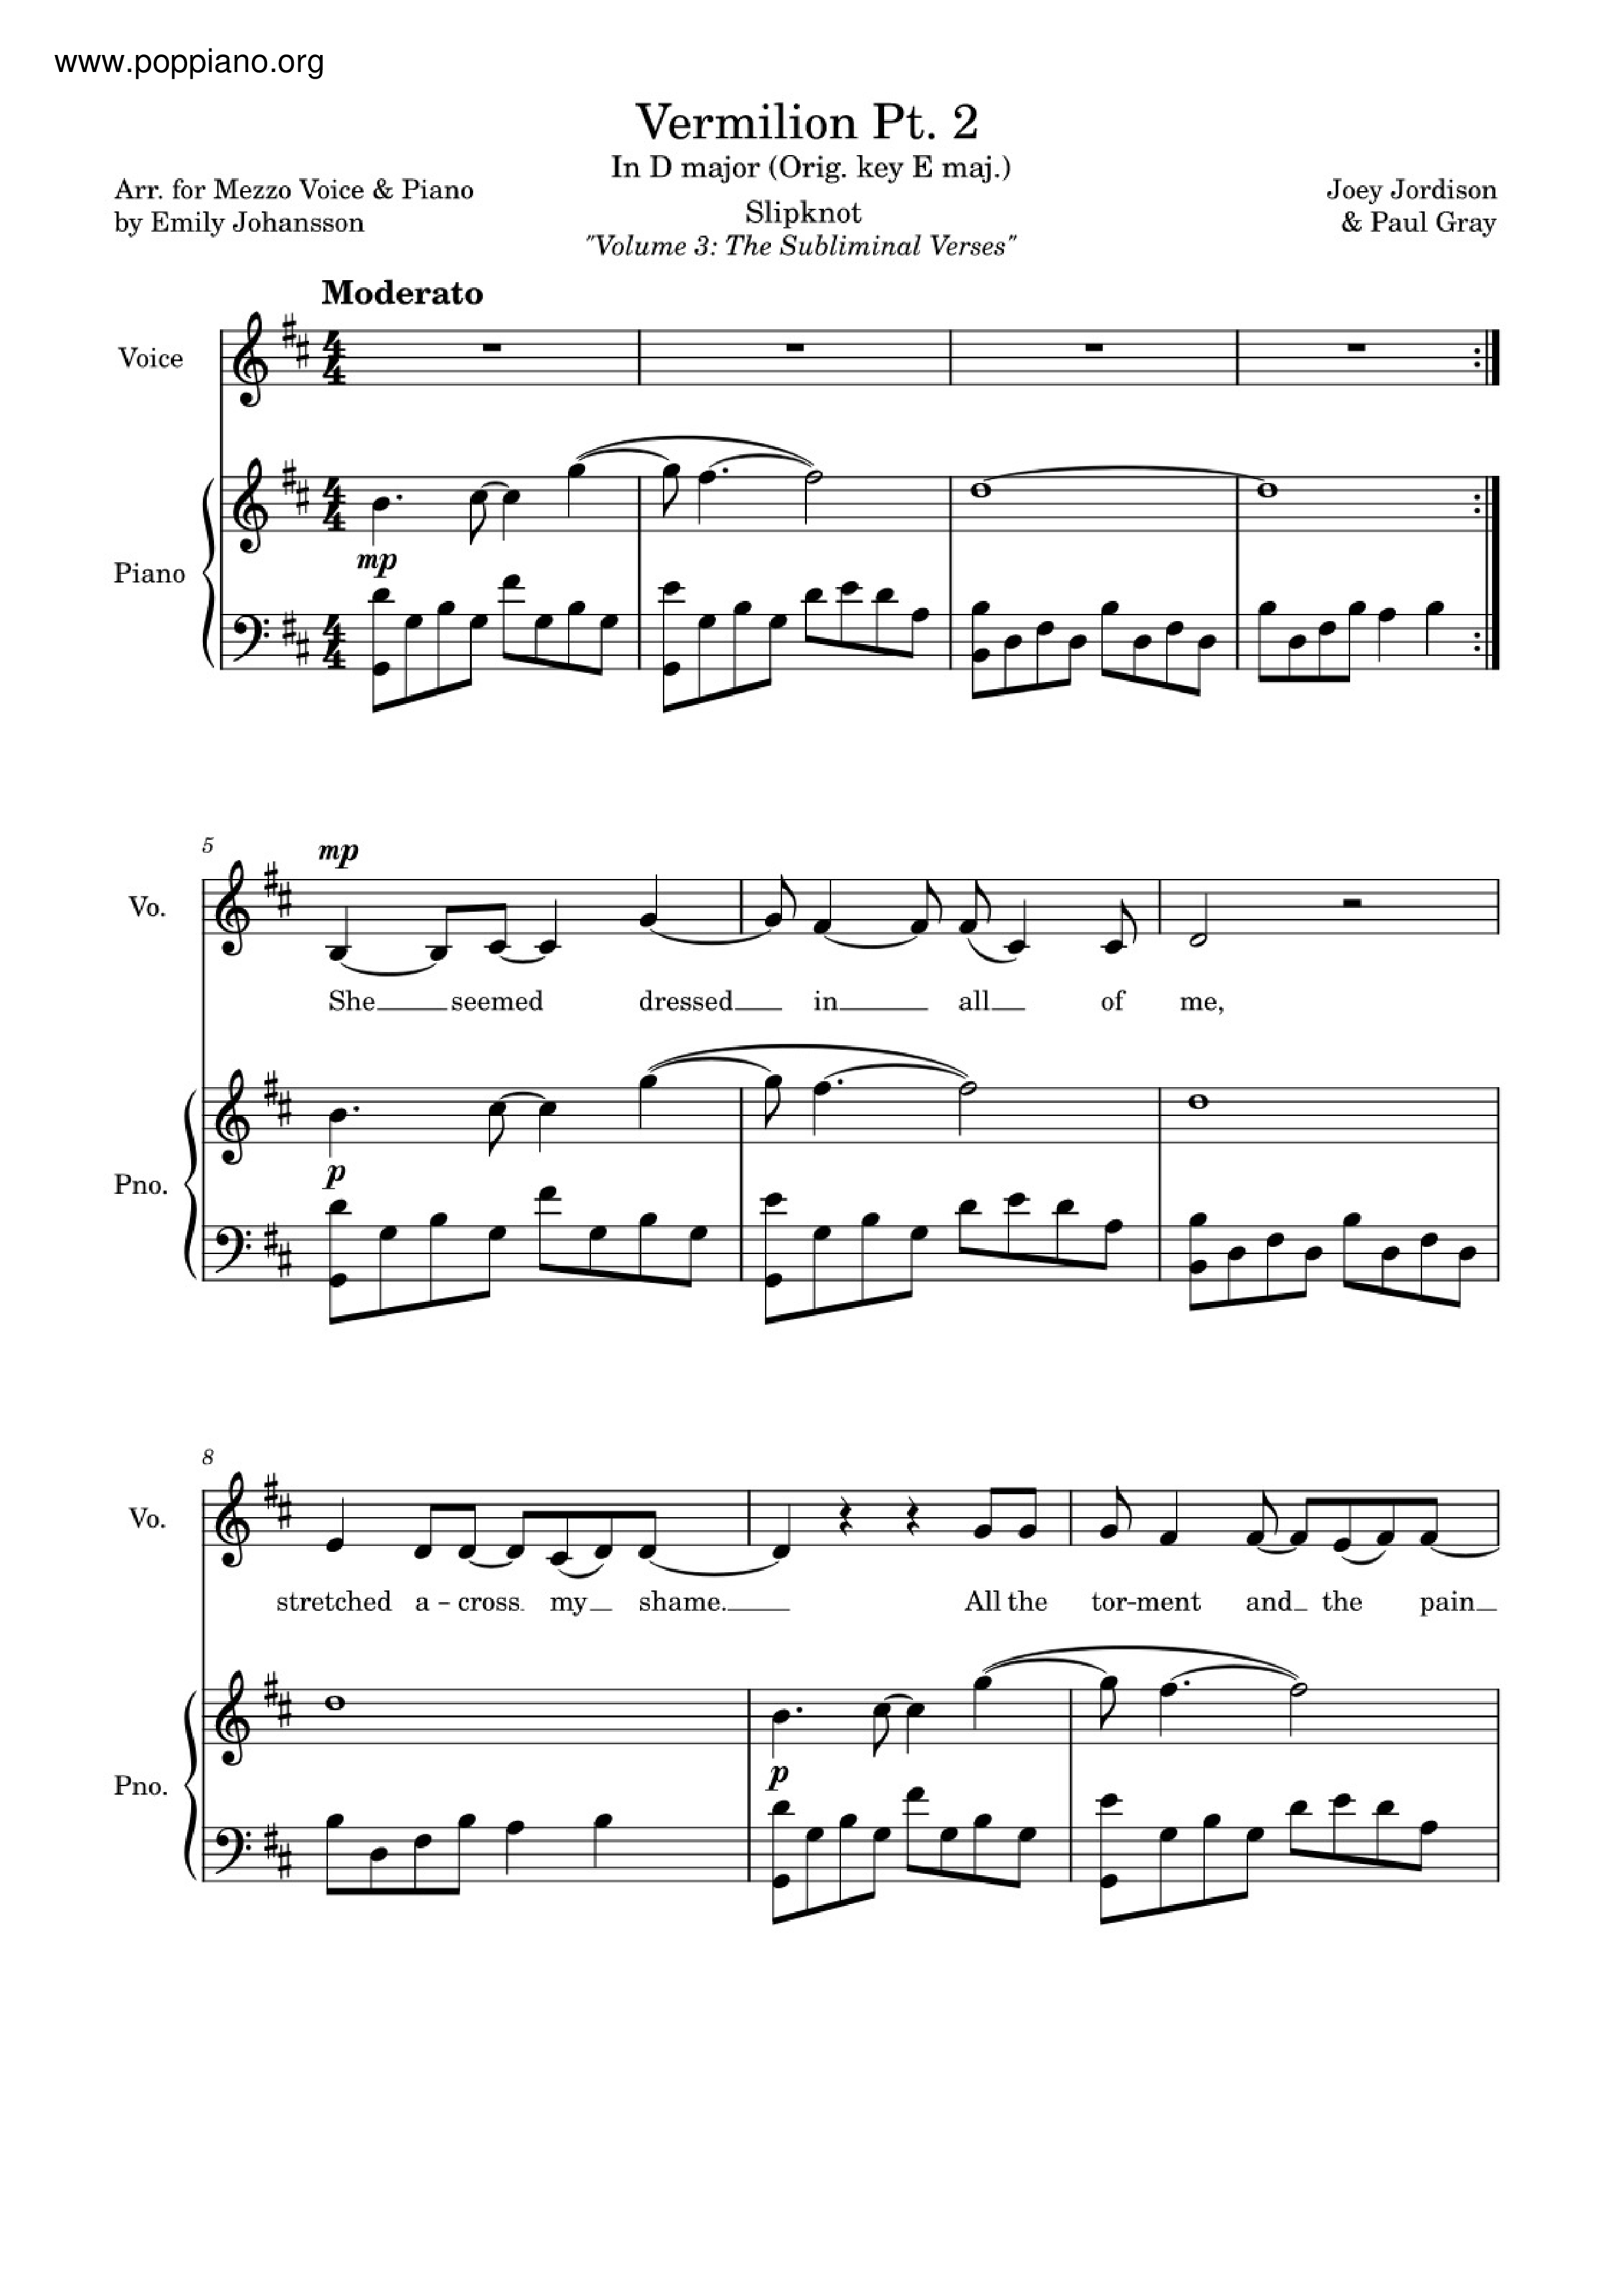 Vermilion, Pt. 2 Score